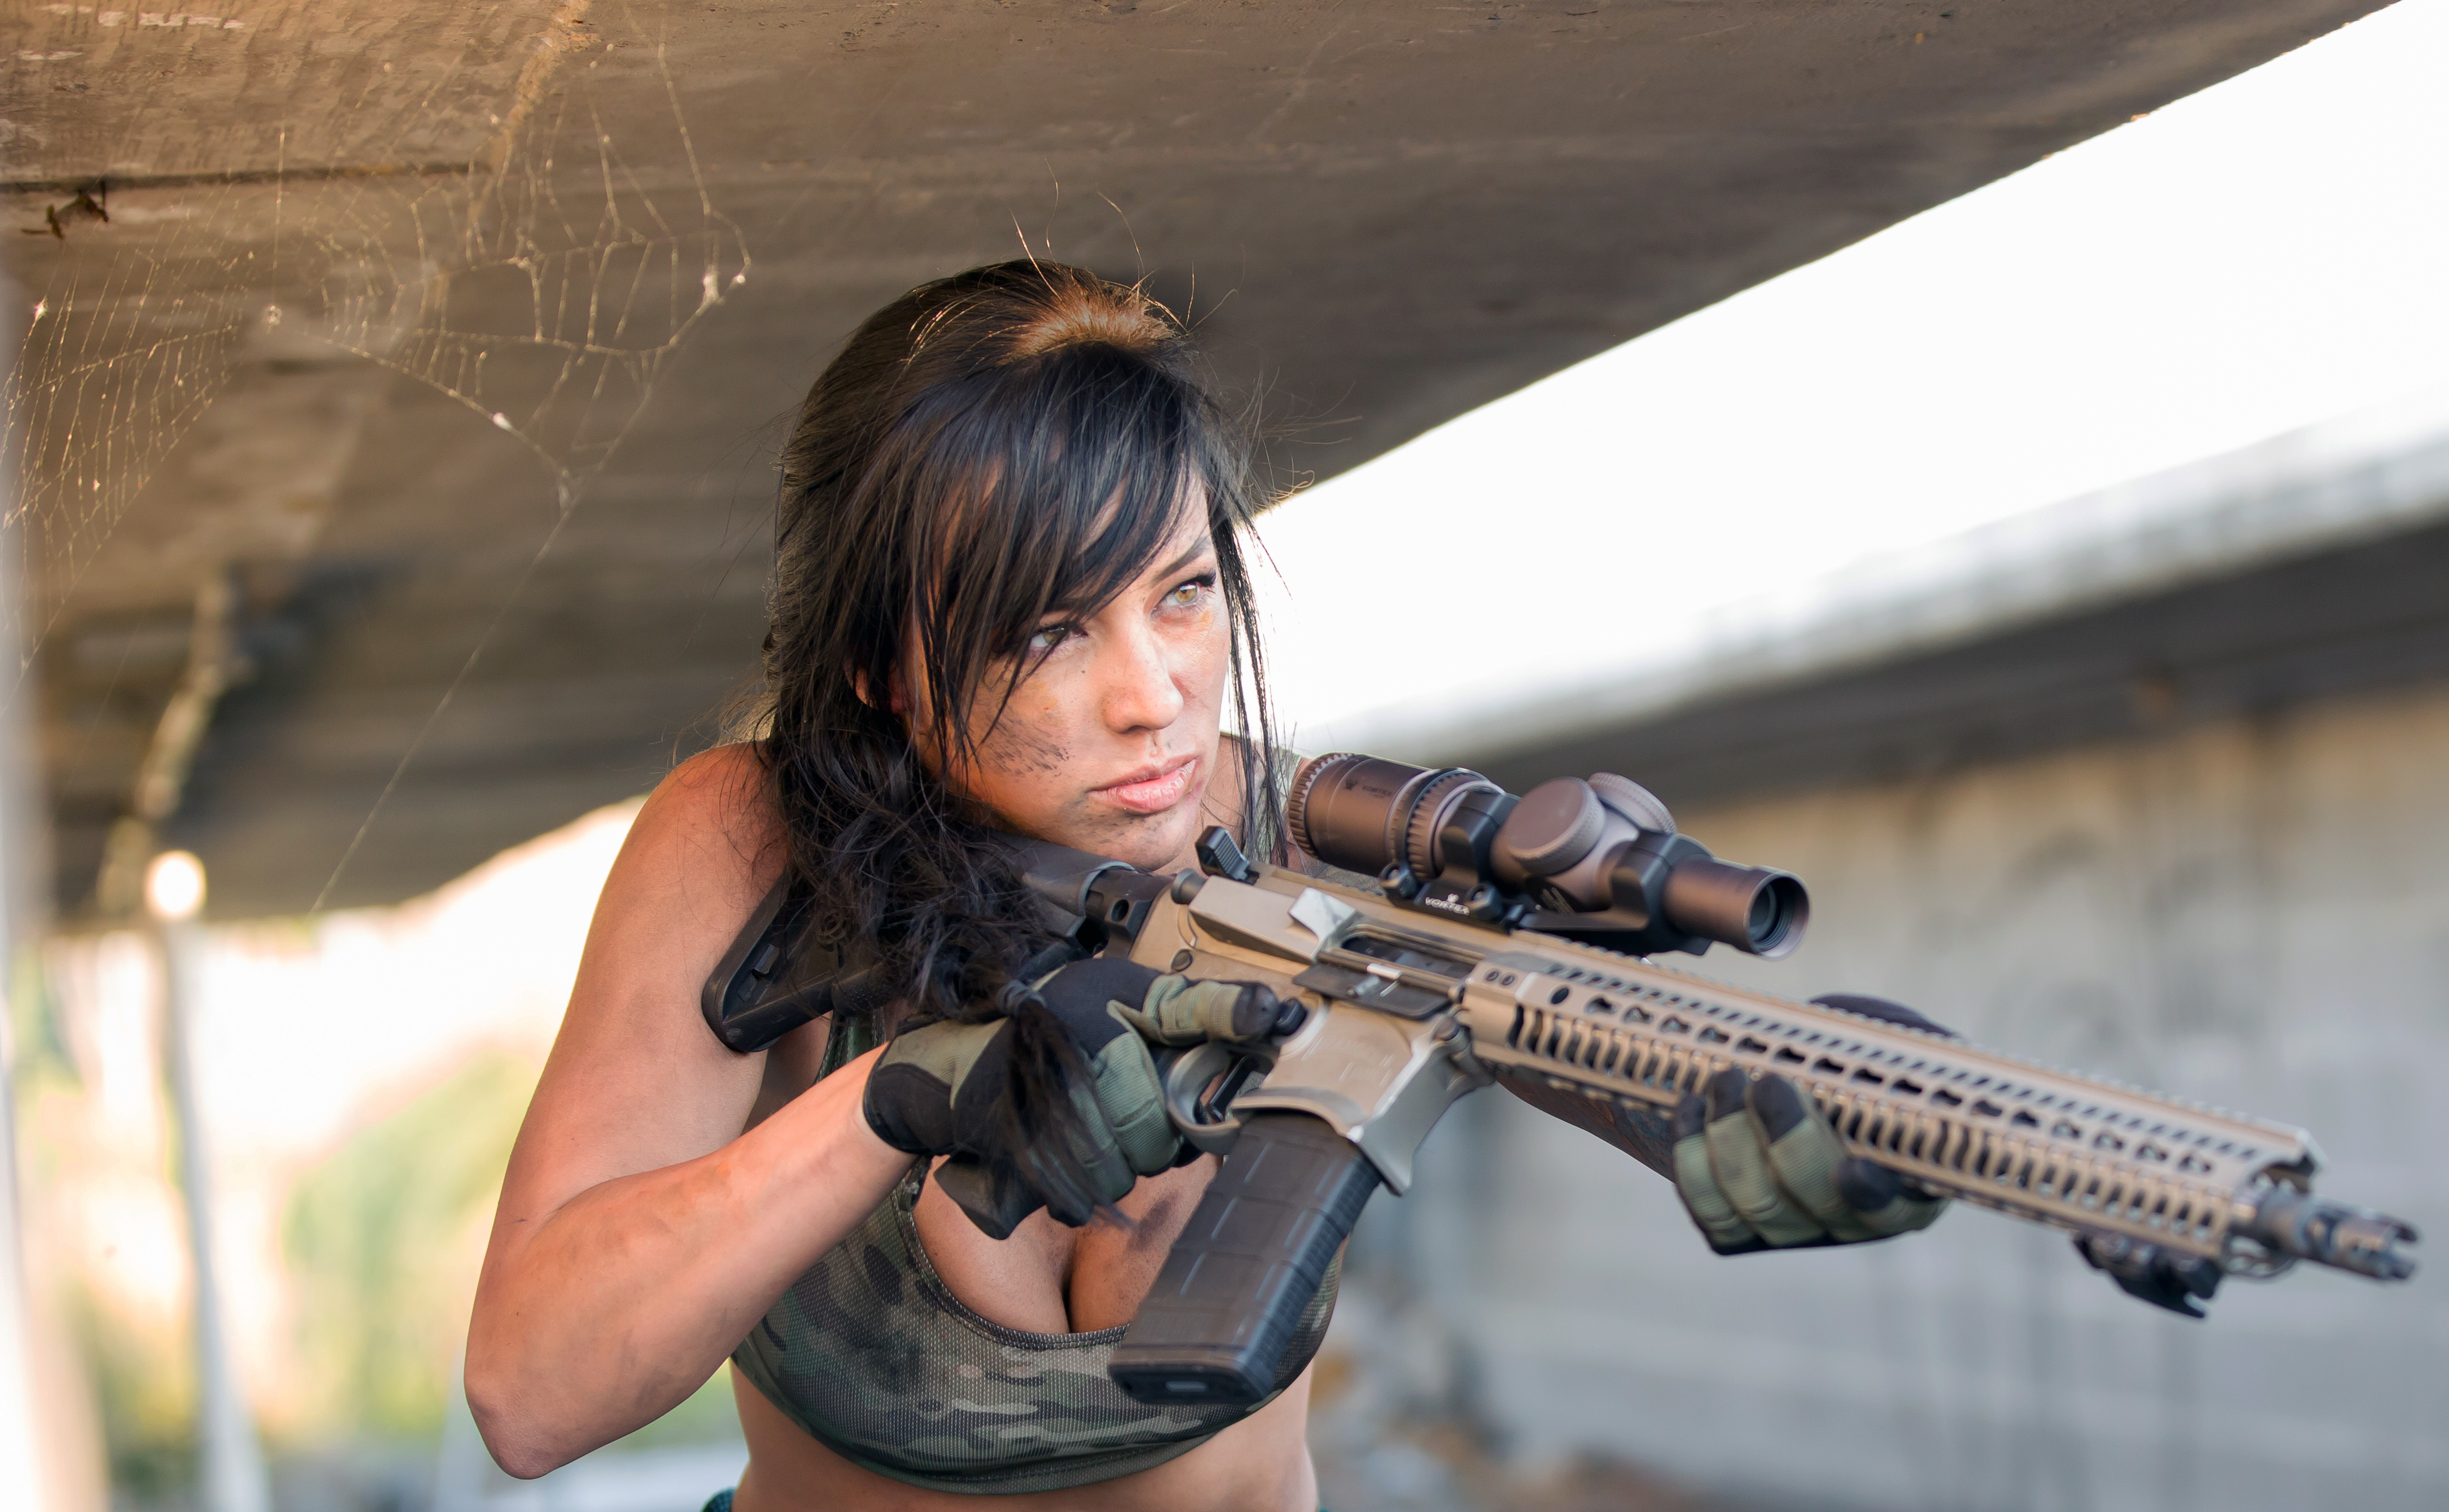 People 4895x3023 Alex Zedra cosplay weapon women dark hair rifles girls with guns cleavage machine gun camouflage